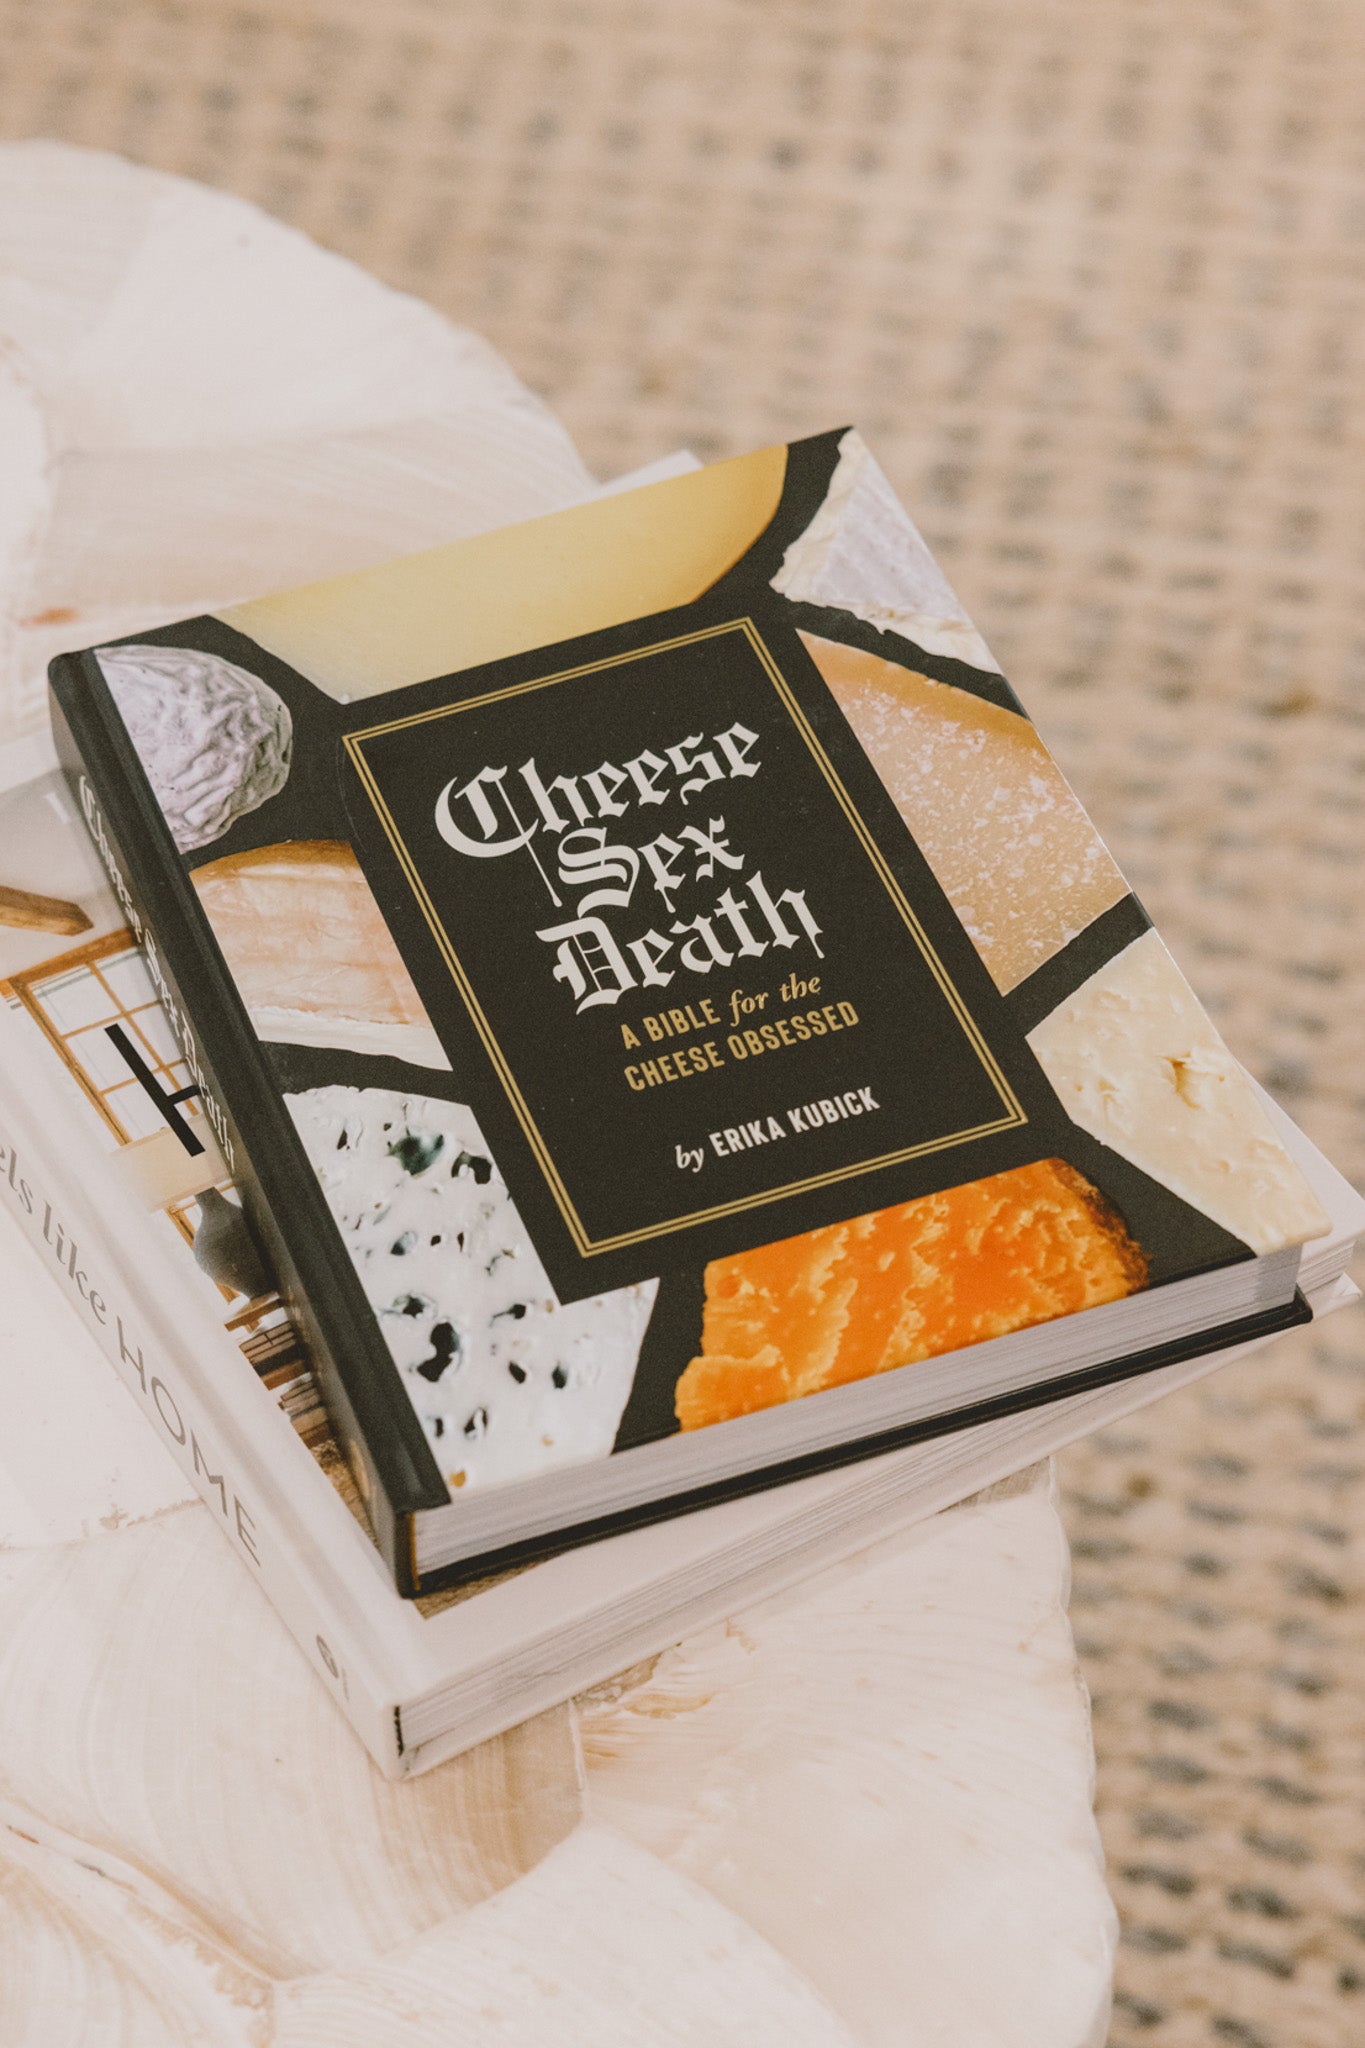 Cheese Sex Death Book